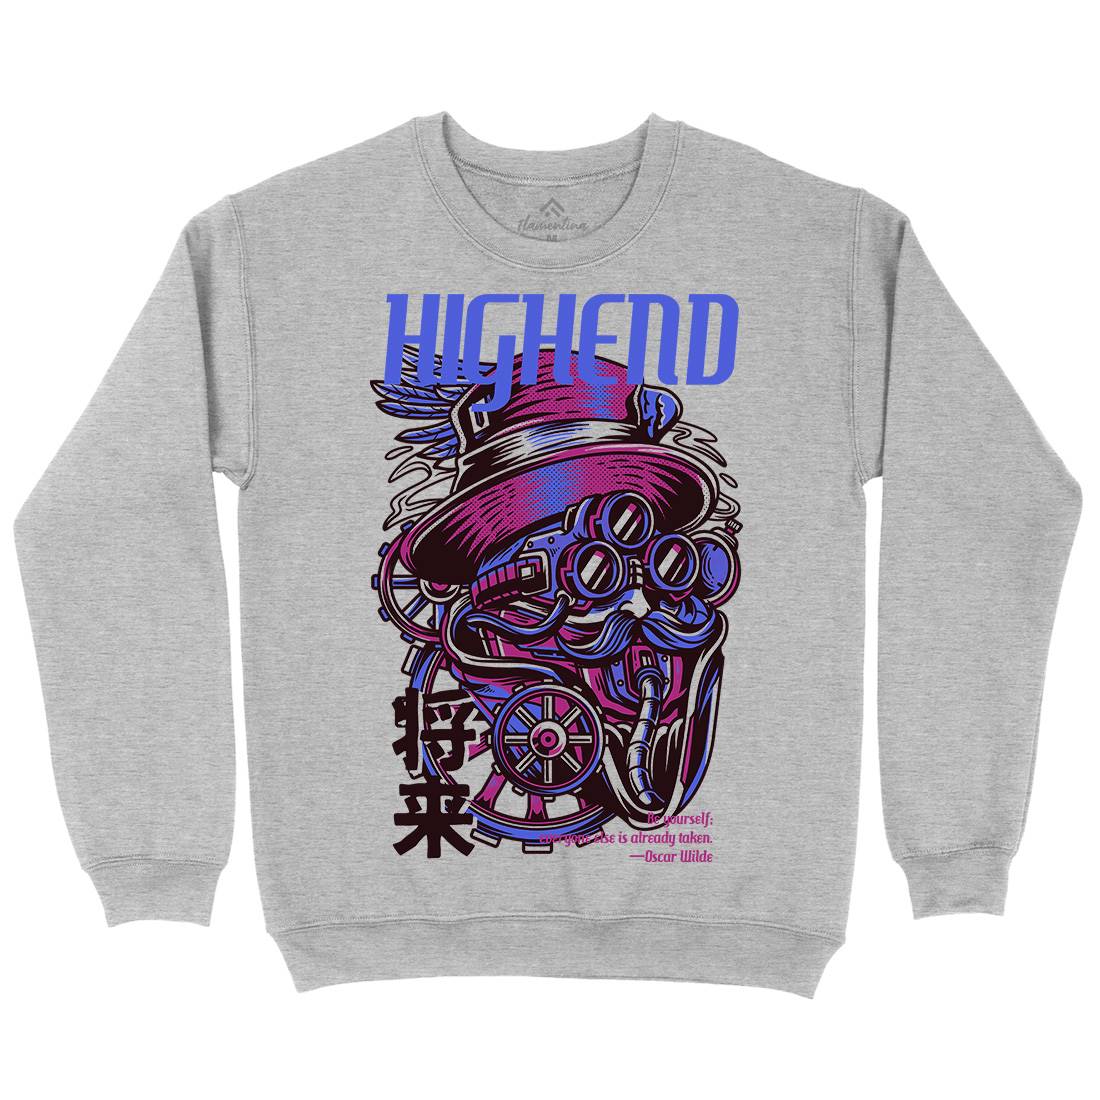 High End Kids Crew Neck Sweatshirt Steampunk D610